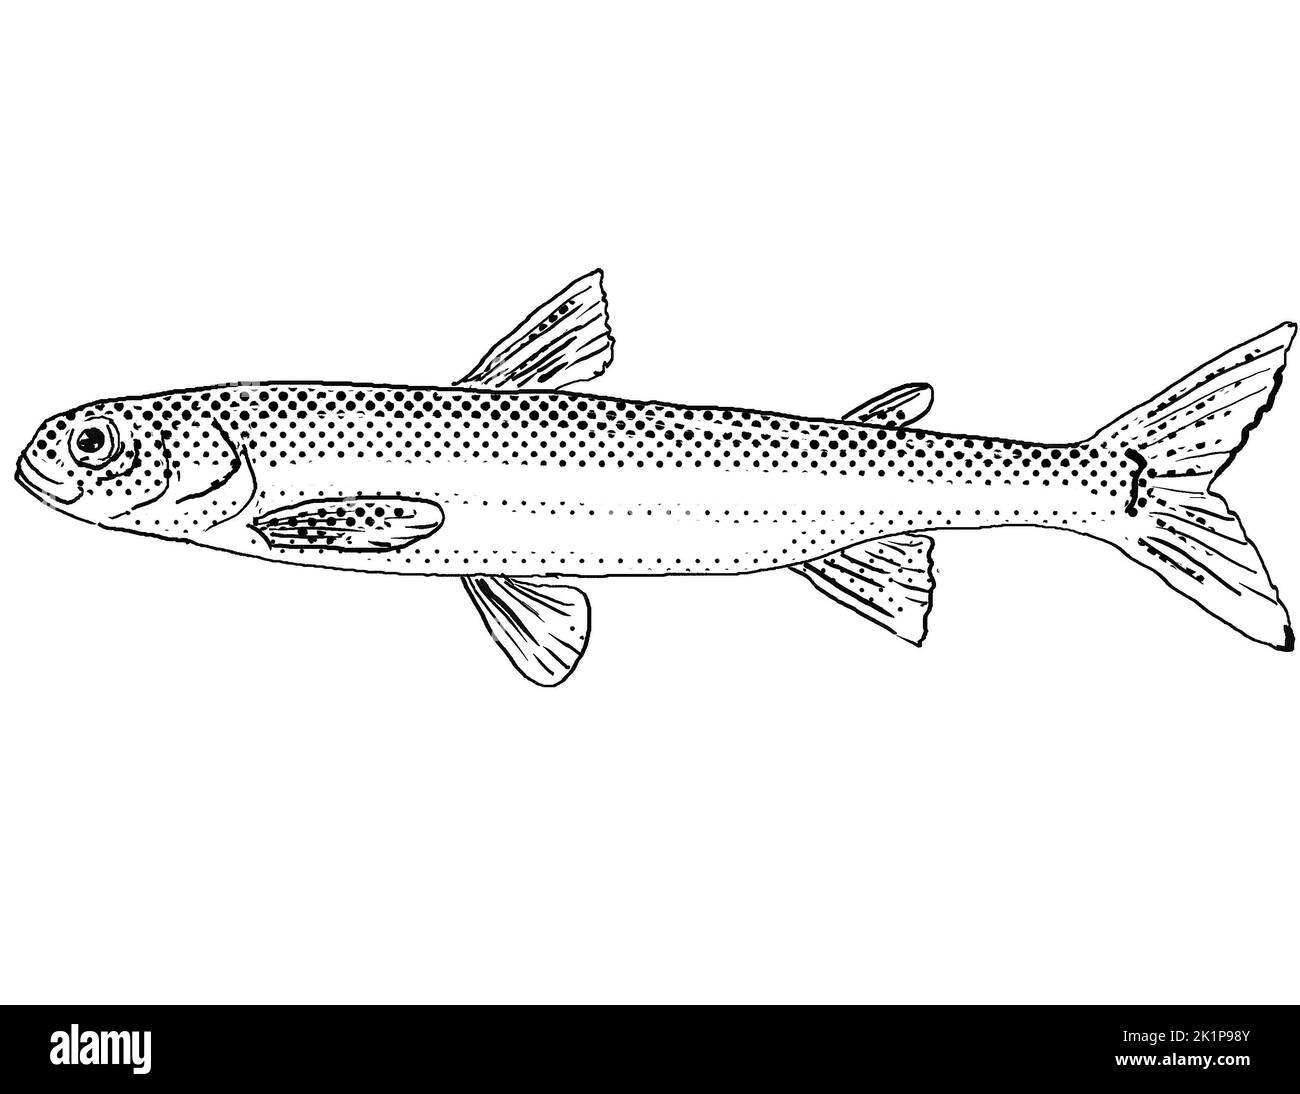 Dessin de style caricaturé d'une éperlan pygmée ou spectre d'Osmerus un poisson d'eau douce endémique en Amérique du Nord avec des points de demi-teinte sur bac isolé Banque D'Images